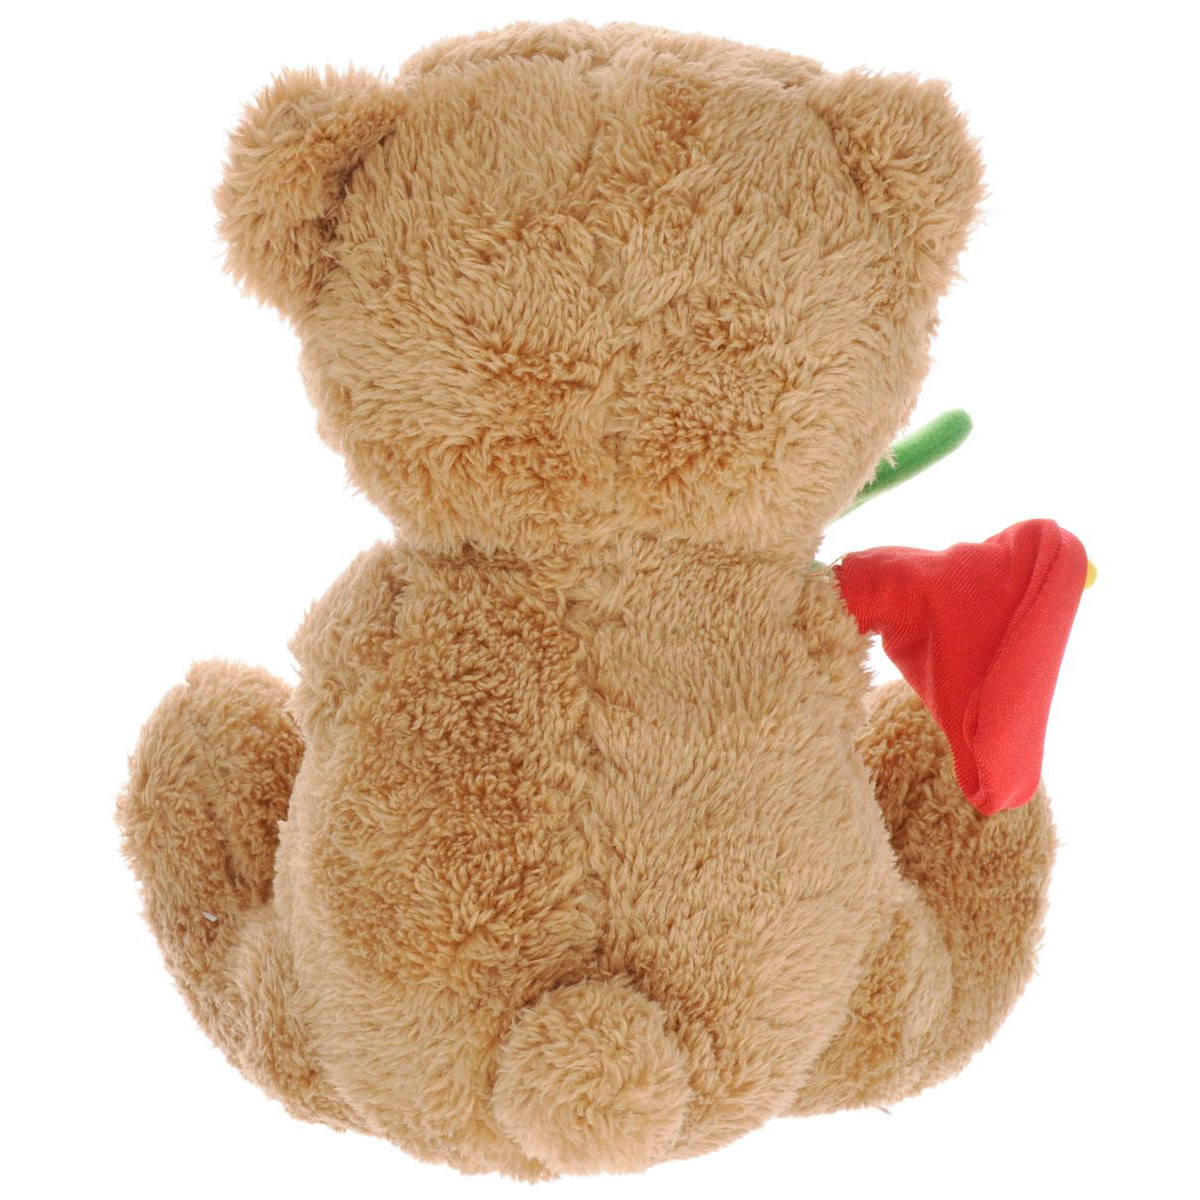 Мягкая игрушка - Медвежонок Сэмми с красной каллой, музыкальный, 18 см.  